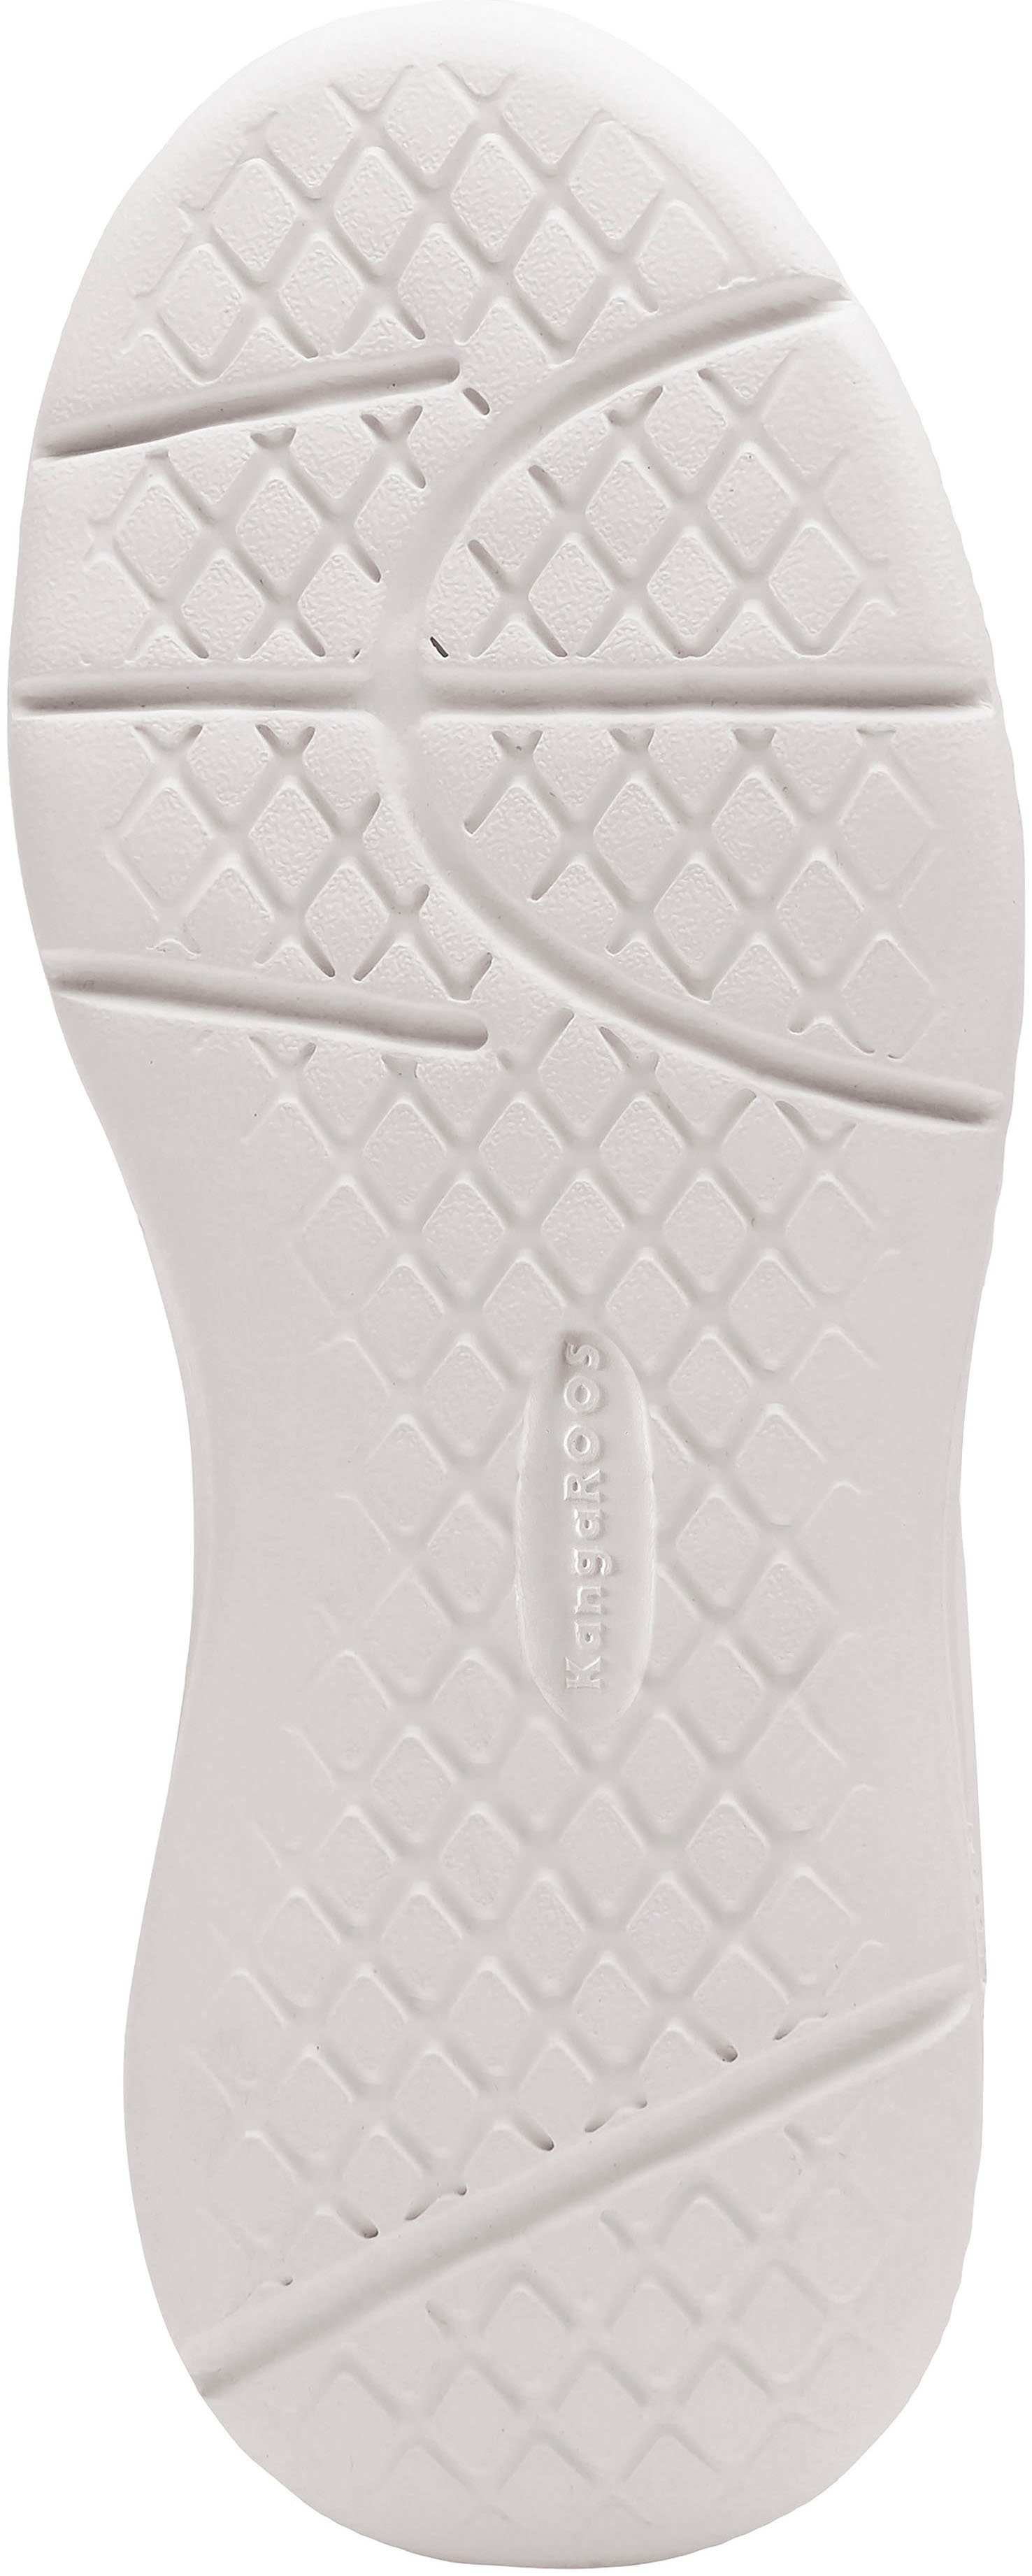 KangaROOS schwarz-weiß Sneaker mit Klettverschluss K-Ico V